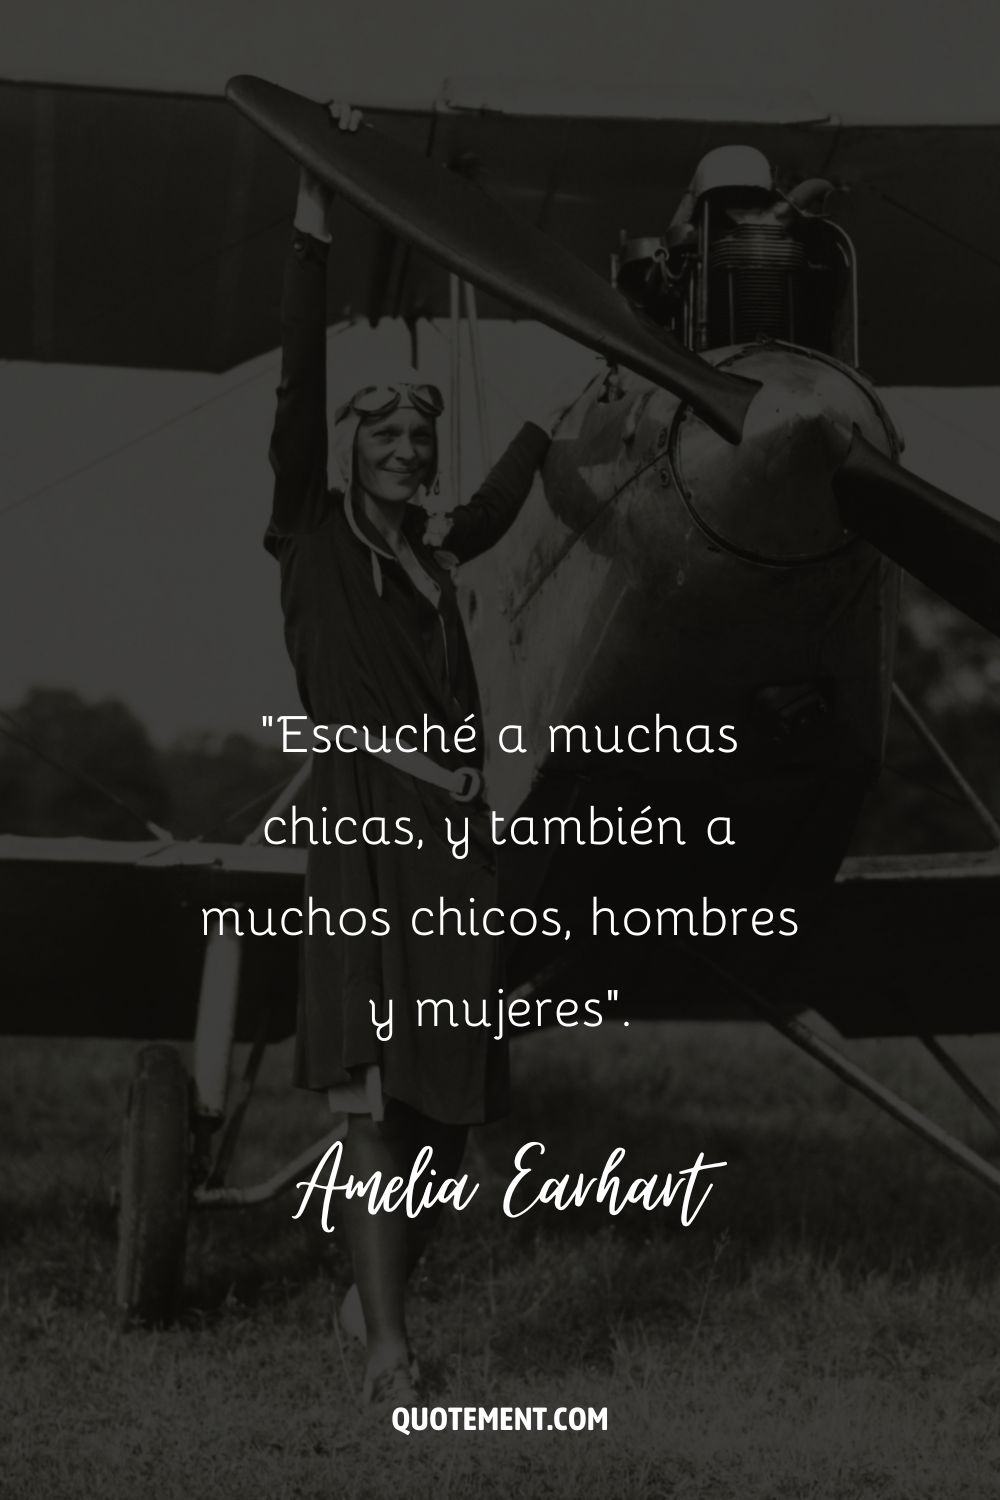 "Me lo contaron muchas chicas, y también me lo preguntaron muchos chicos, hombres y mujeres". - Amelia Earhart, The Fun of It (La diversión)